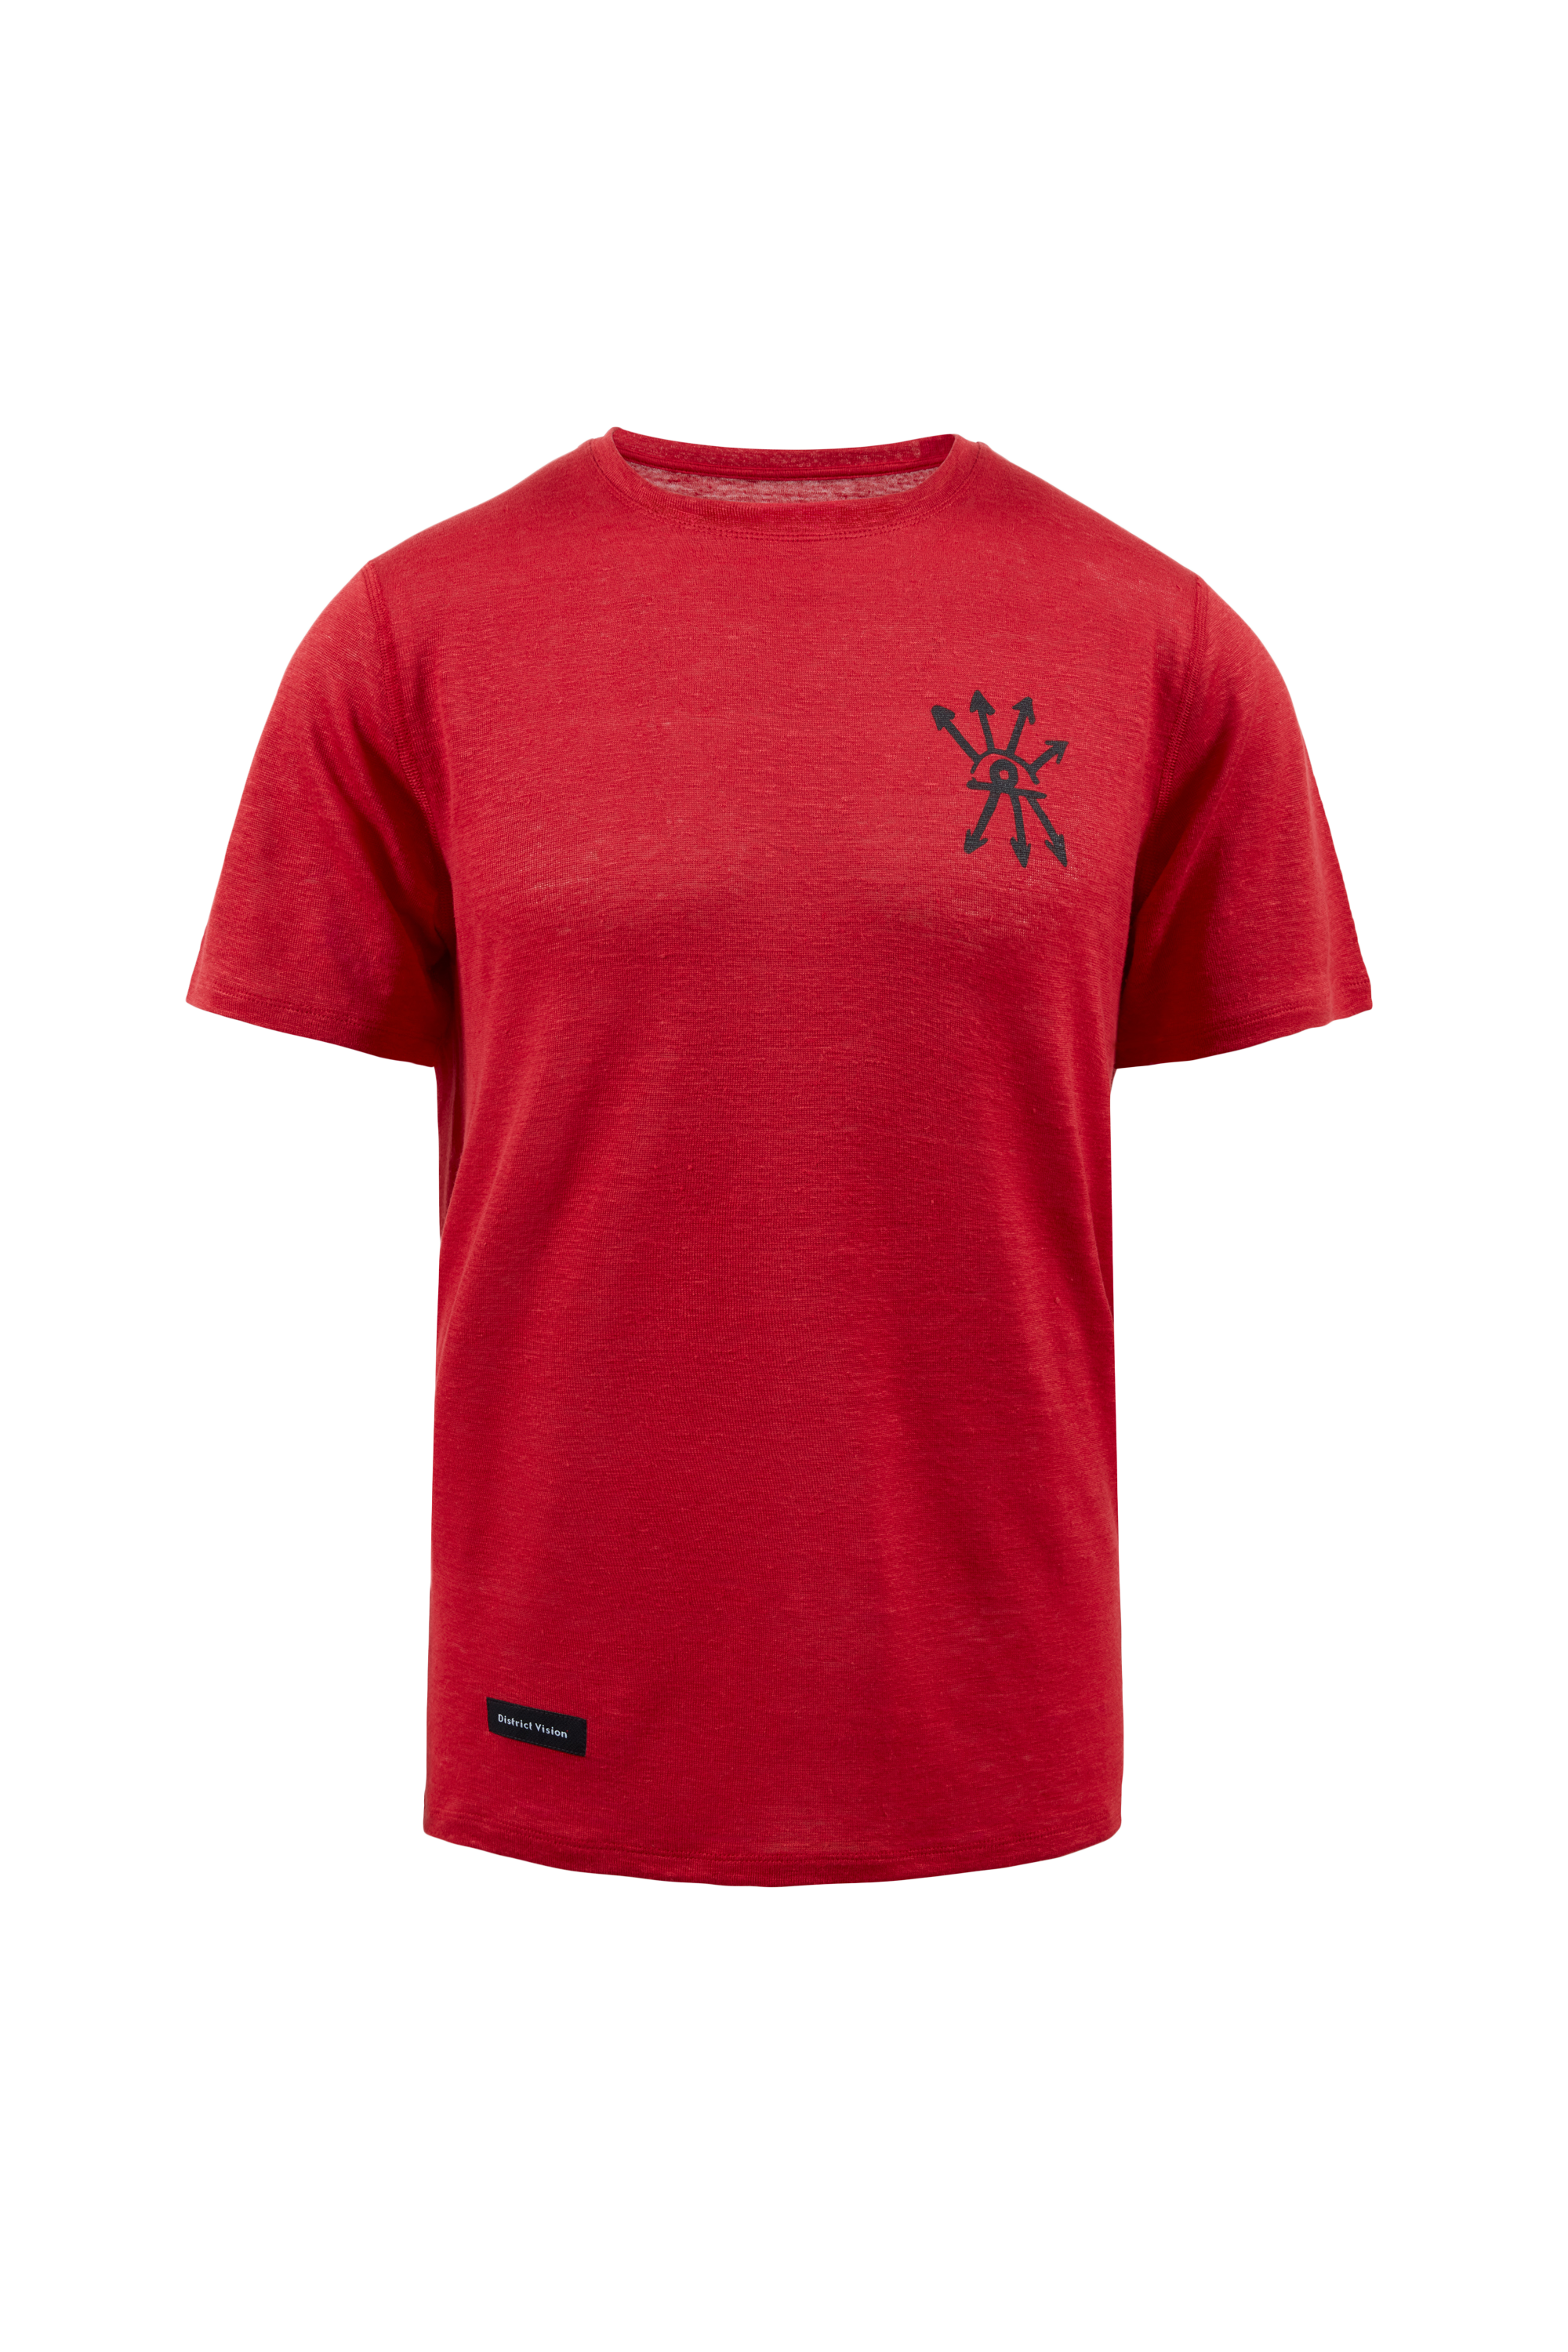 Sukha Hemp Short Sleeve T-Shirt, Goji Red